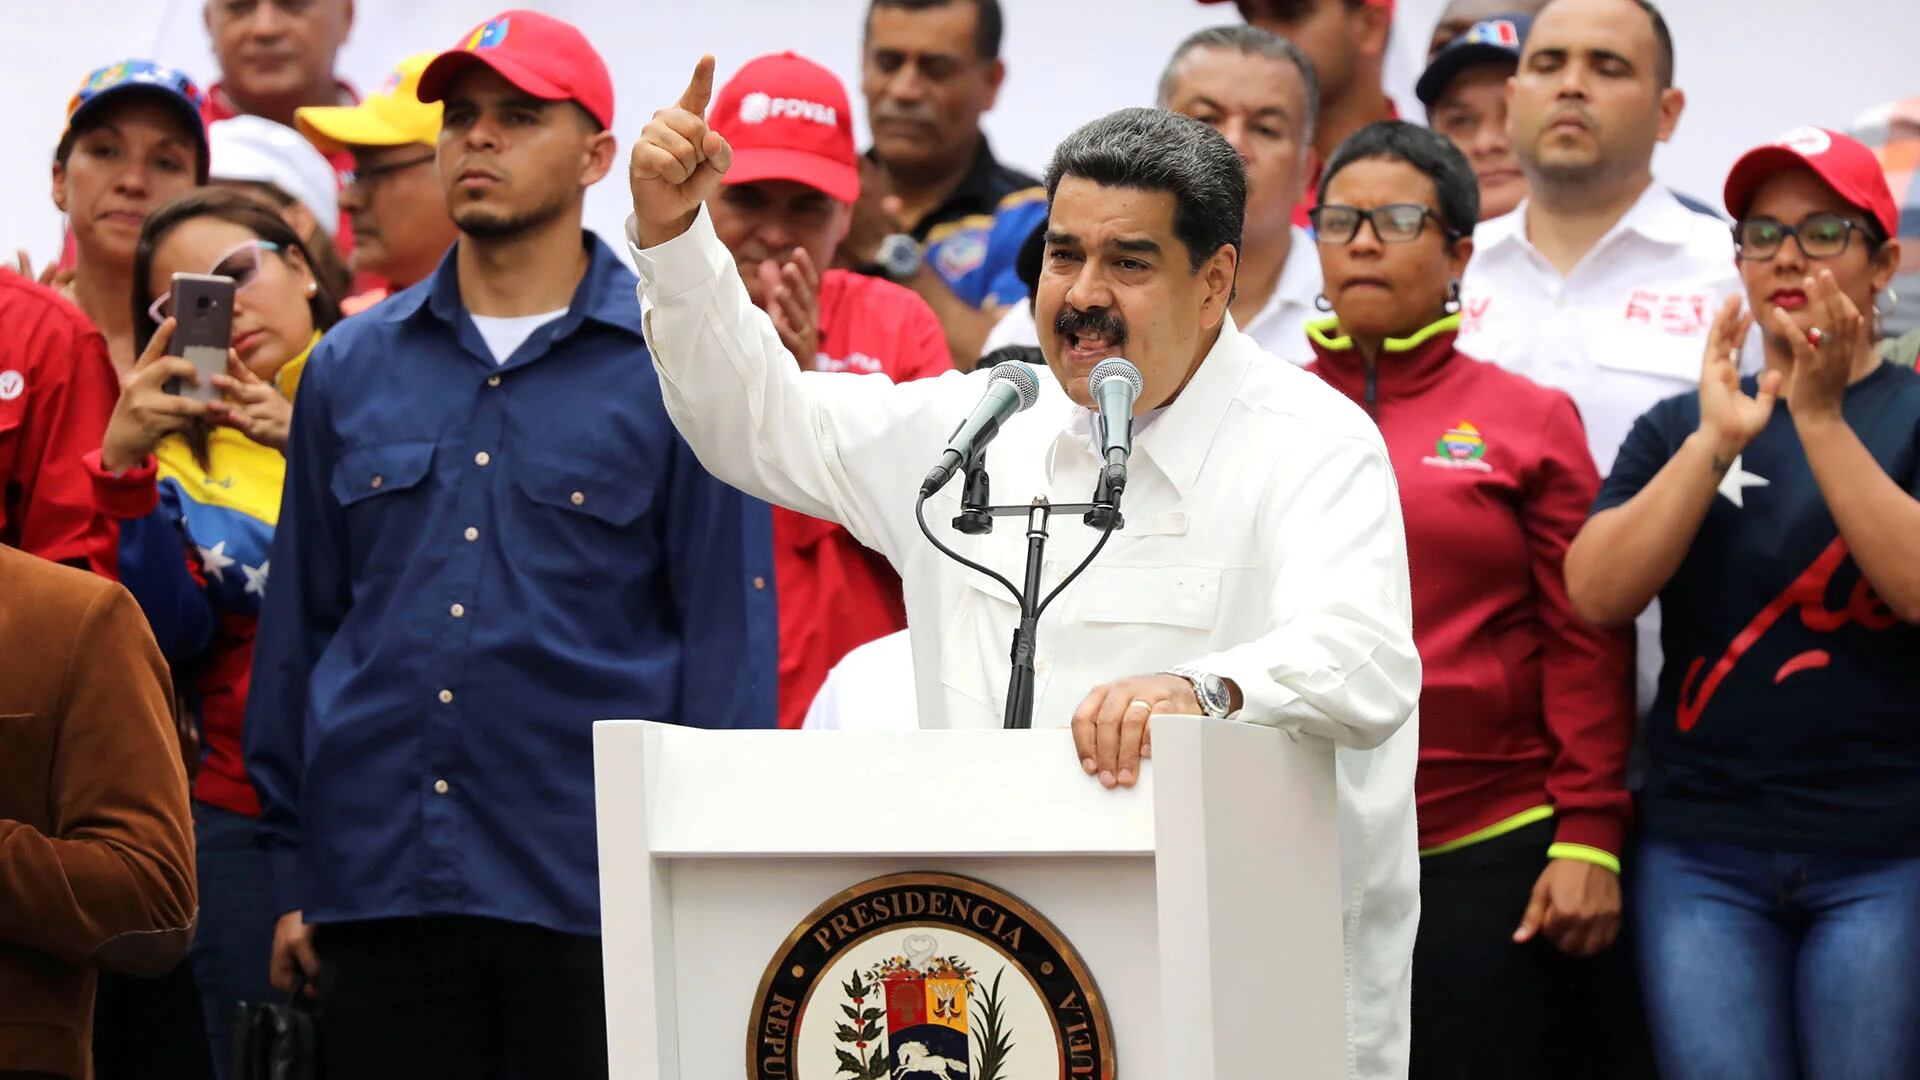 Nicolás Maduro en un acto en Caracas, Venezuela, el 9 de marzo de 2019 (REUTERS/Manaure Quintero)